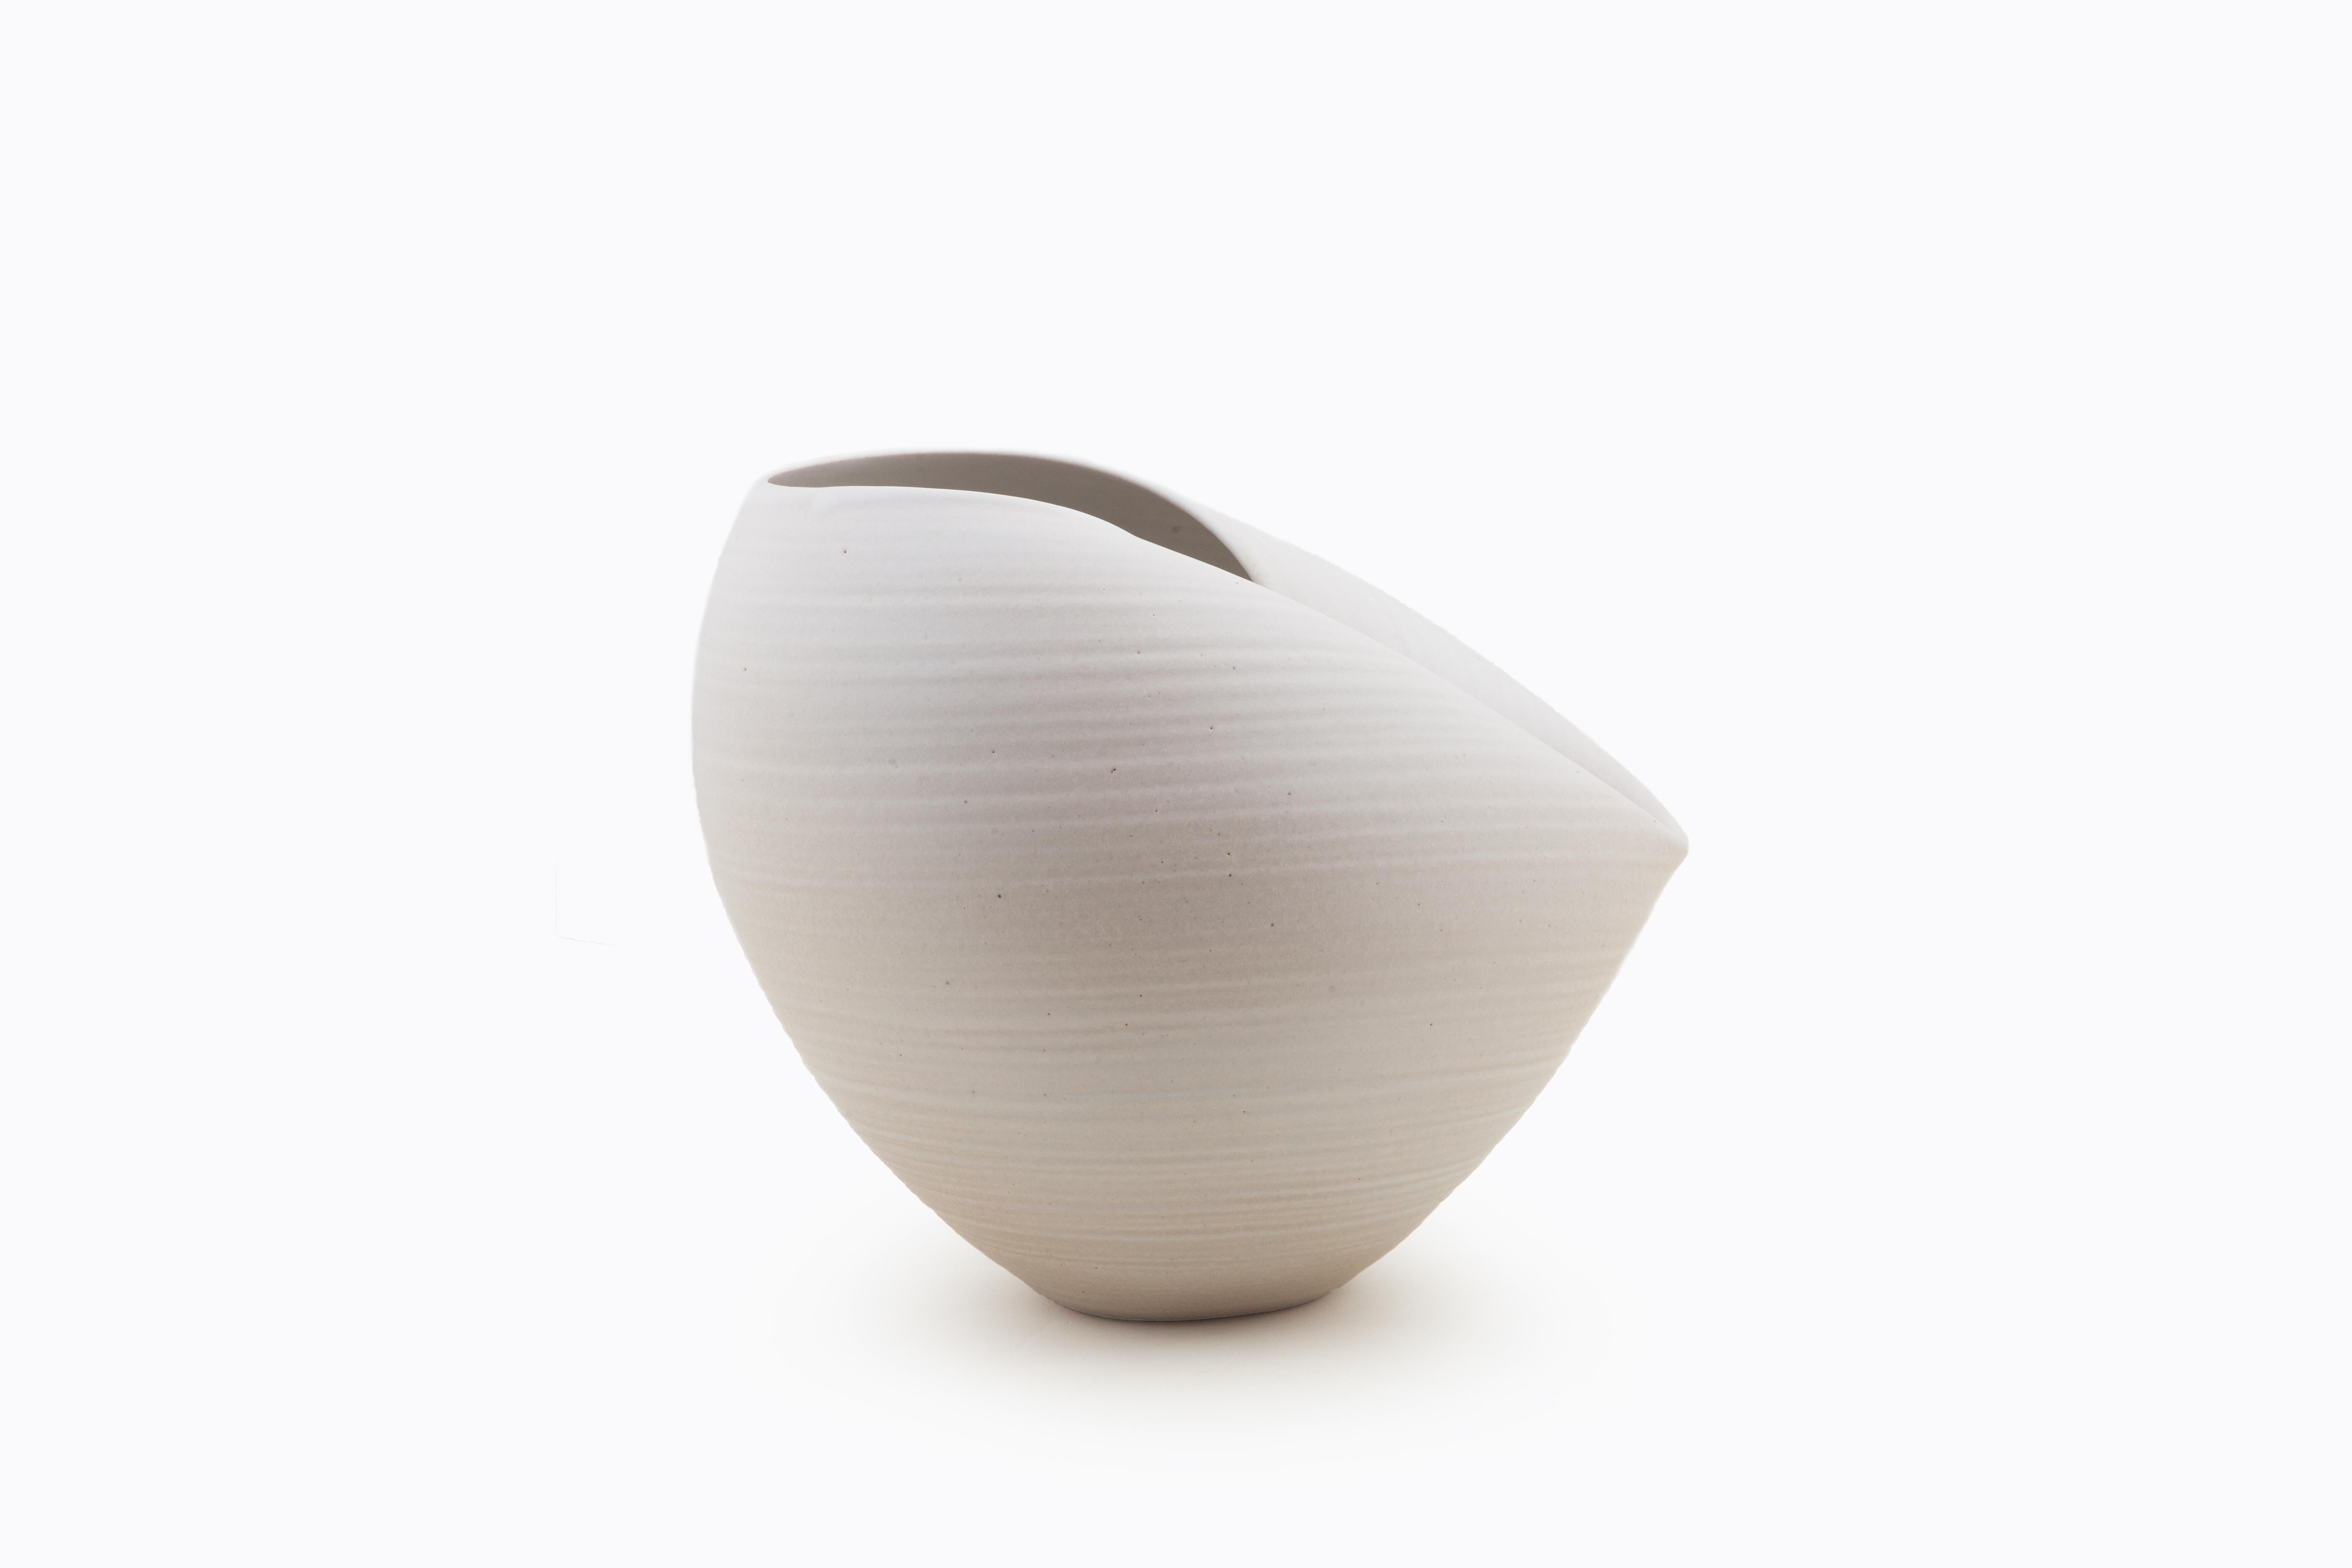 Glazed White Oval Form, Vase, Interior Sculpture or Vessel, Objet D'Art